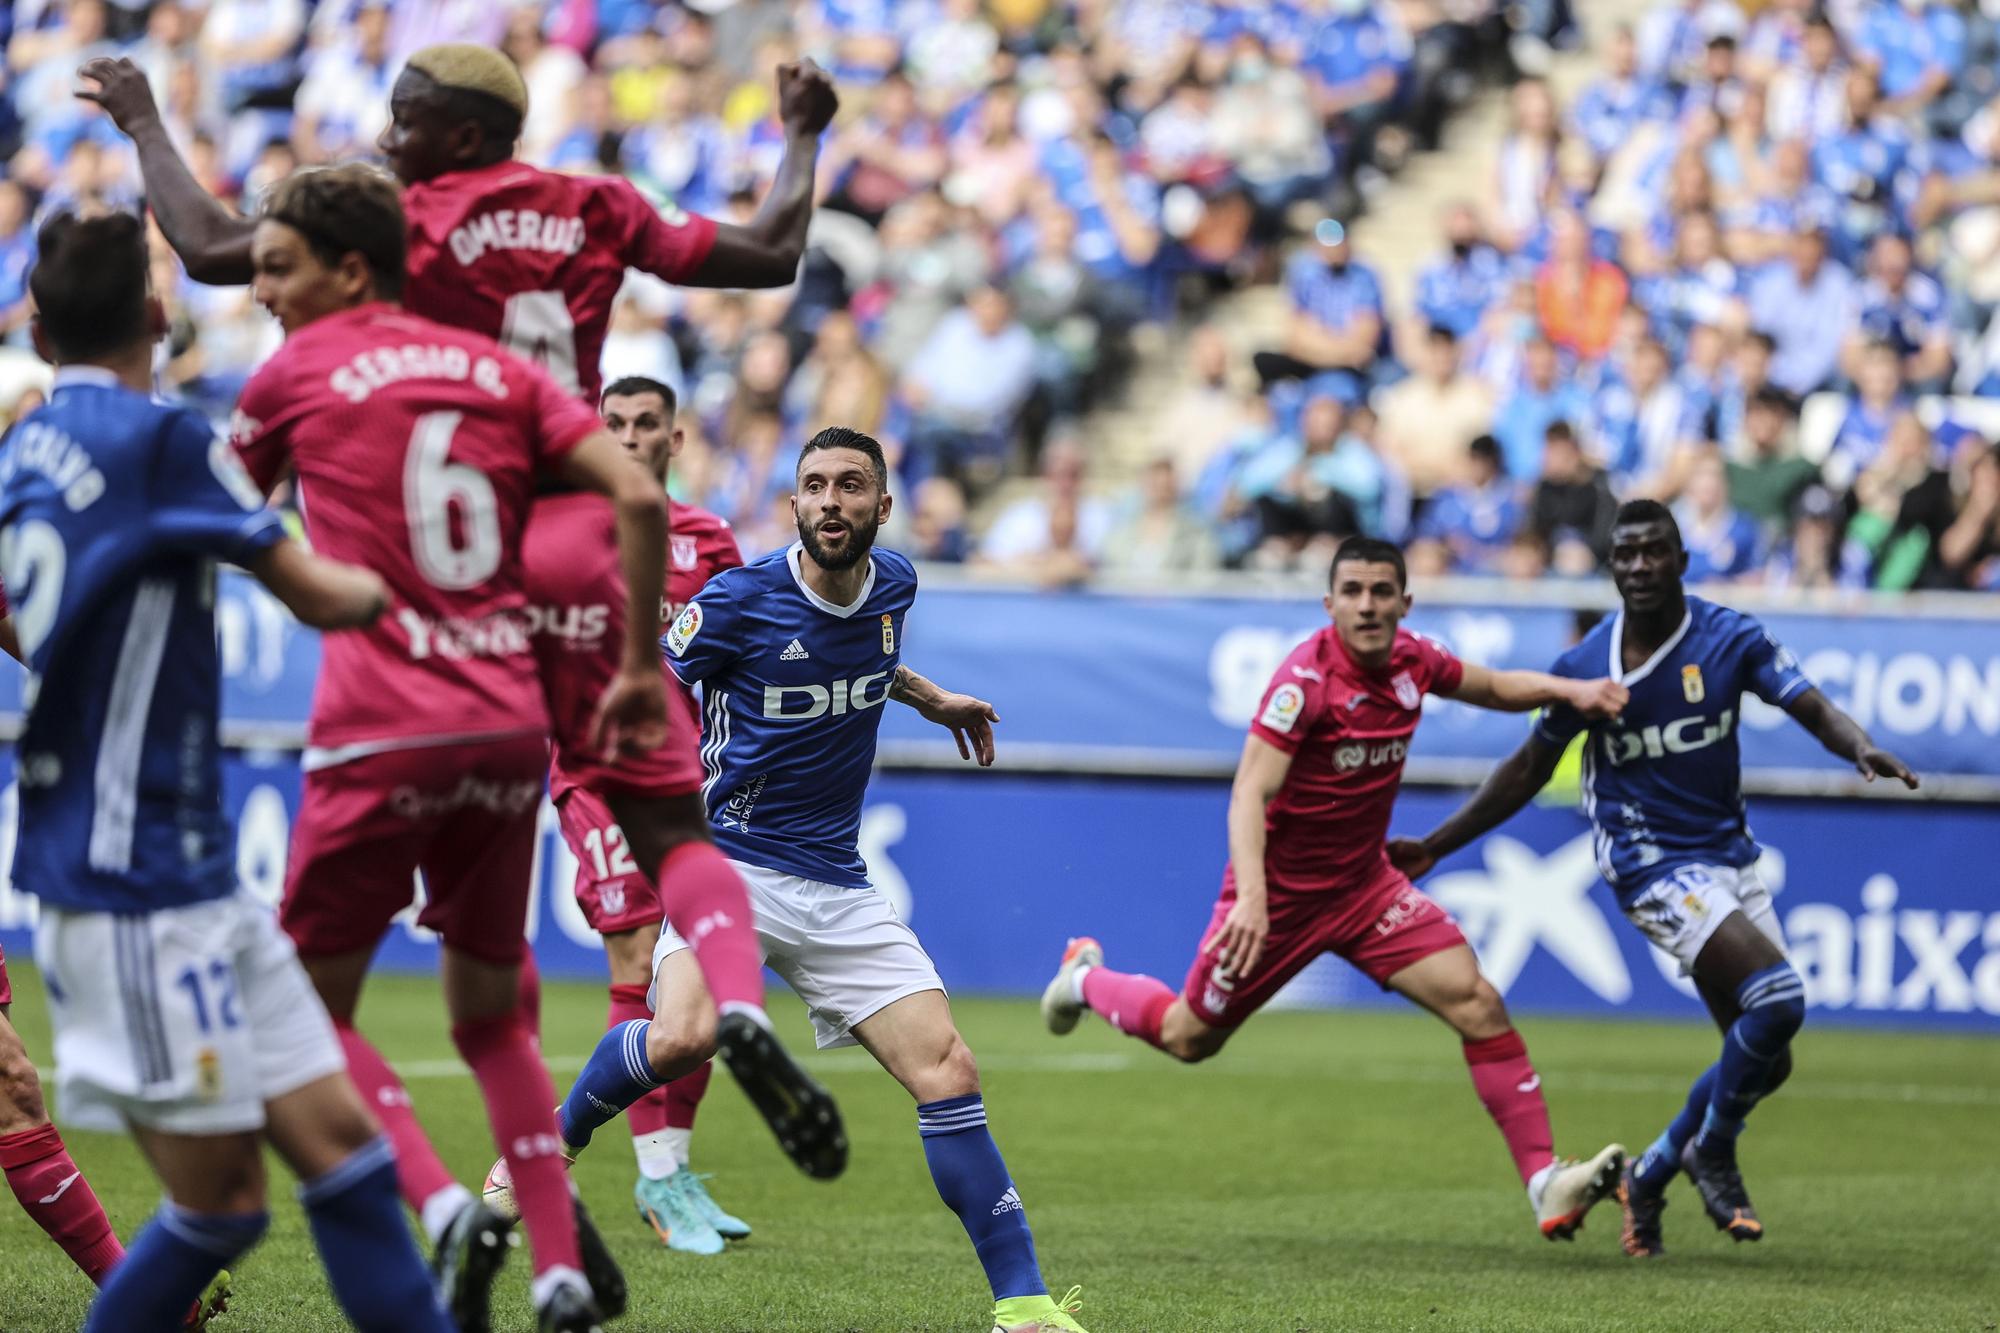 IMÁGENES: Así fue el partido entre el Oviedo y el Leganés